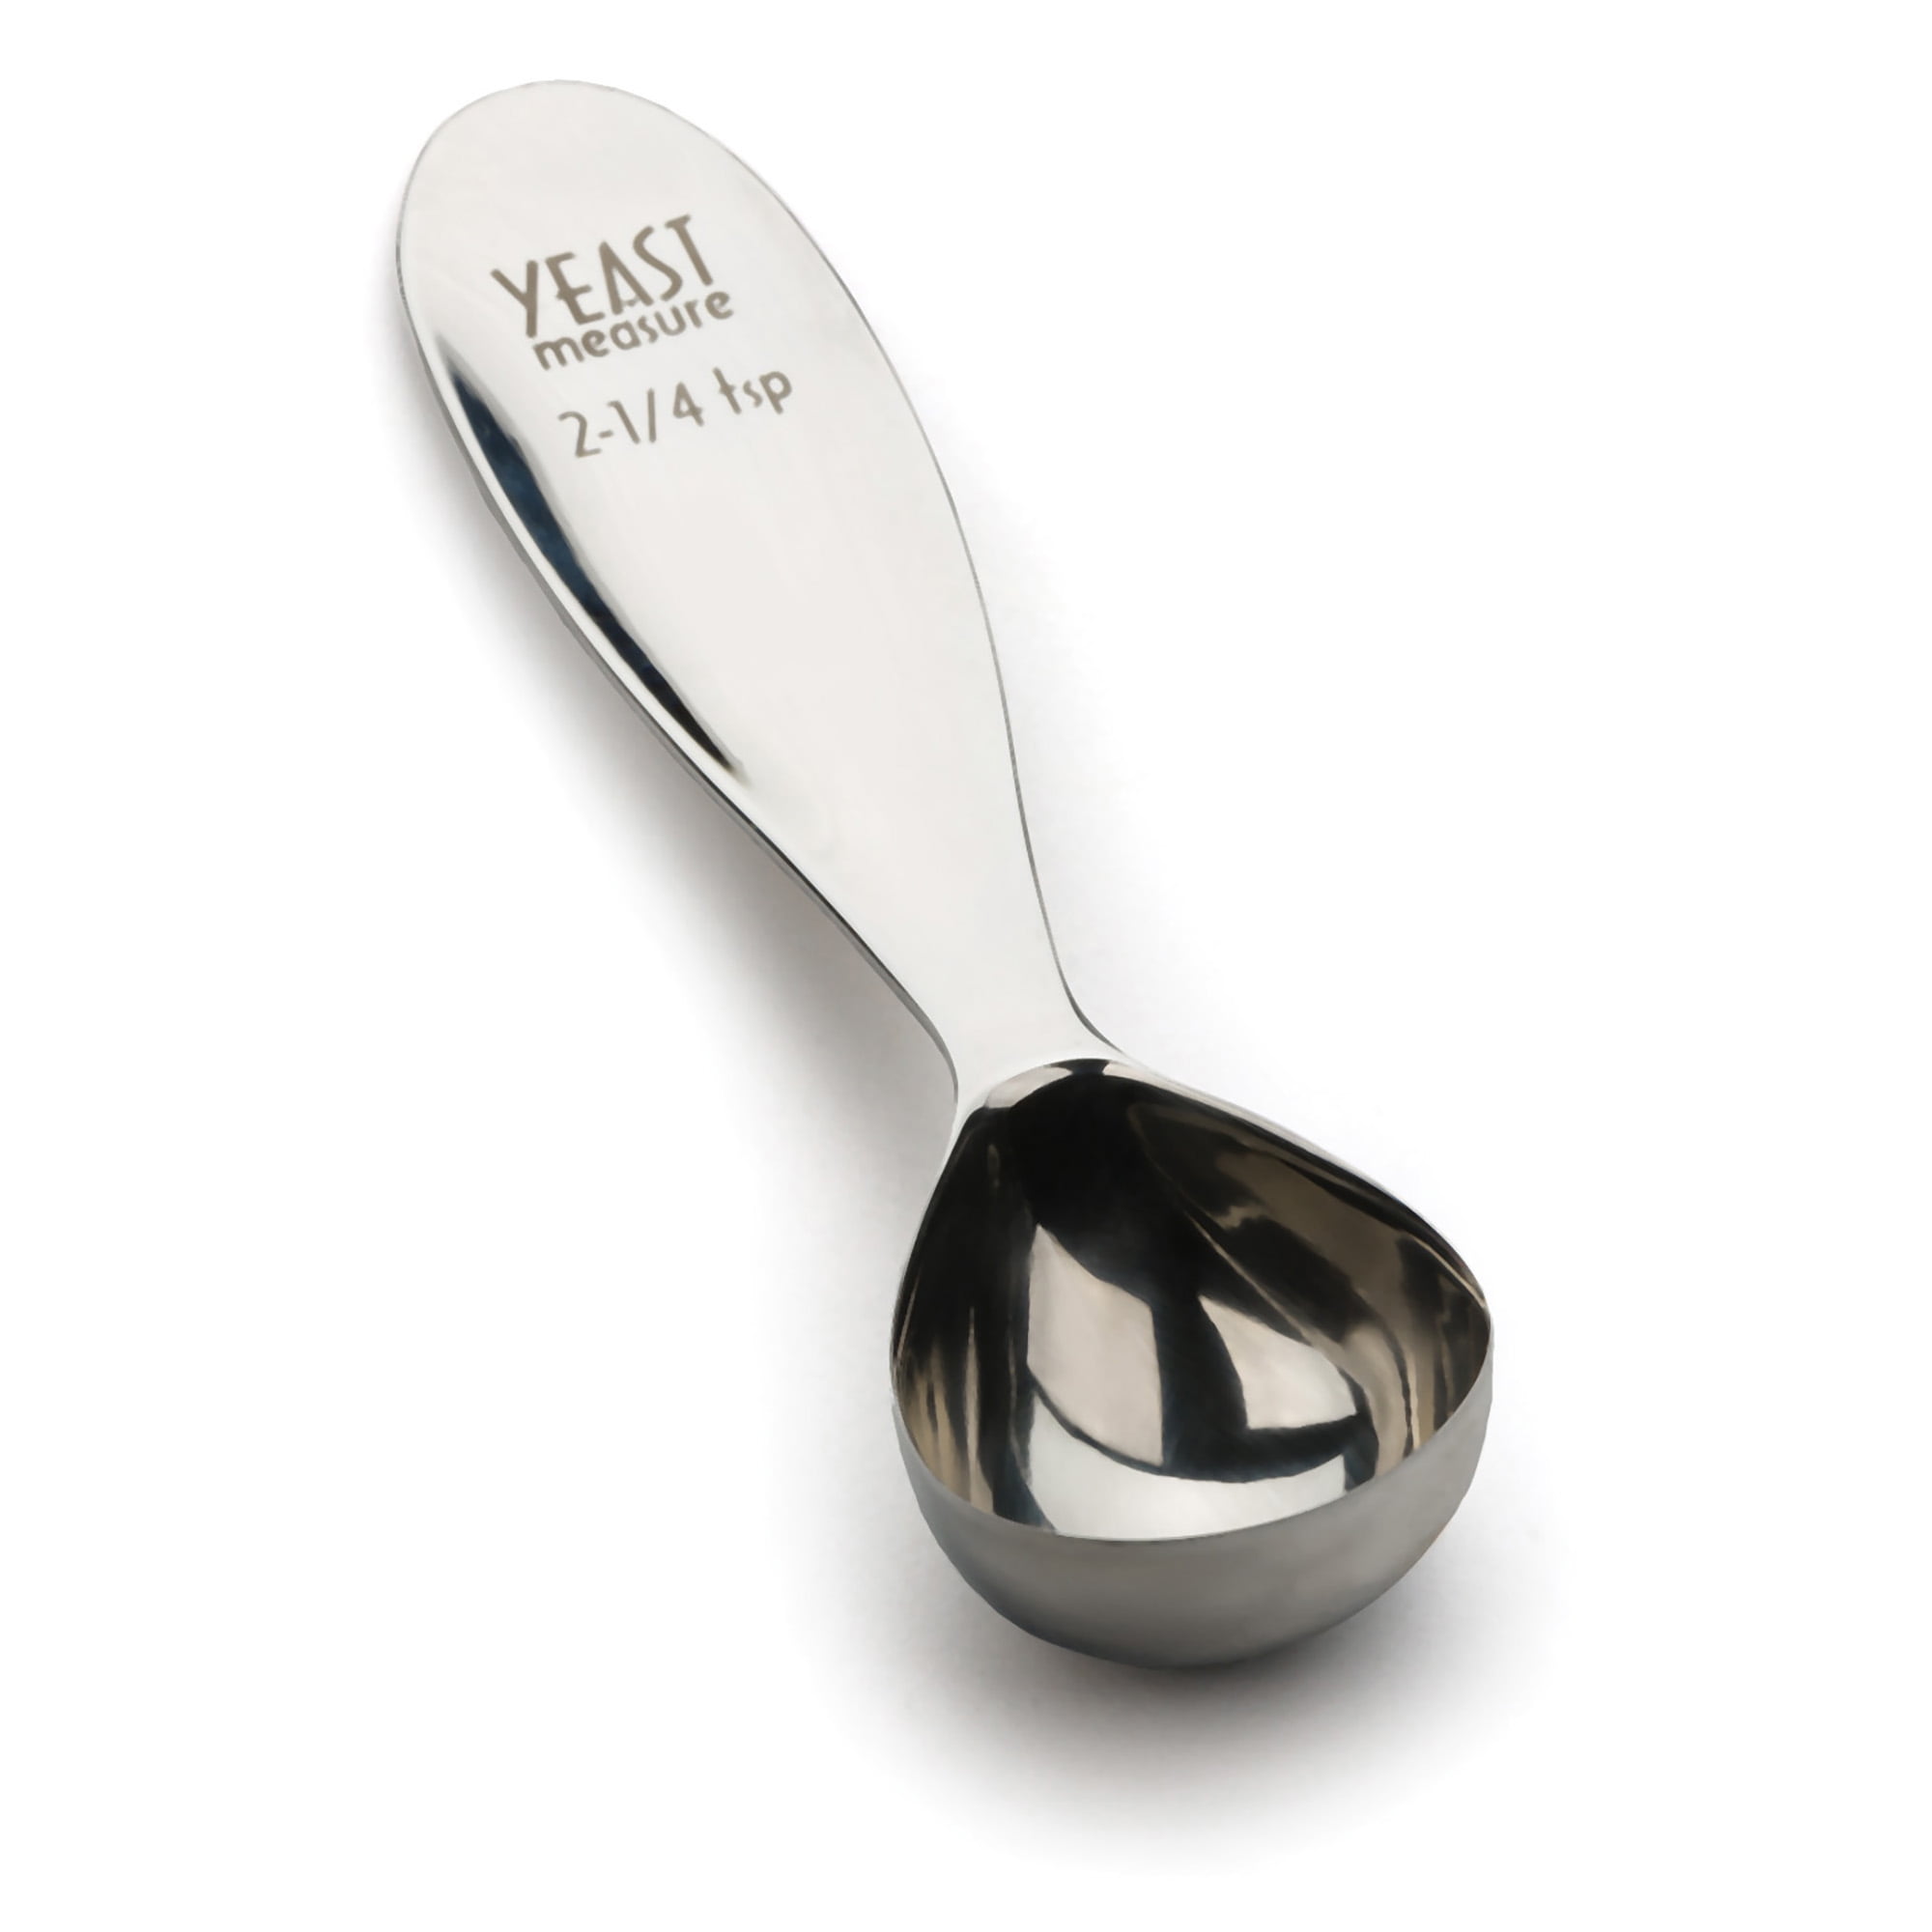 RSVP Measuring Spoons Teaspoon 1/8 Stainless Steel Single Spoon 5 L  (2-Pack)